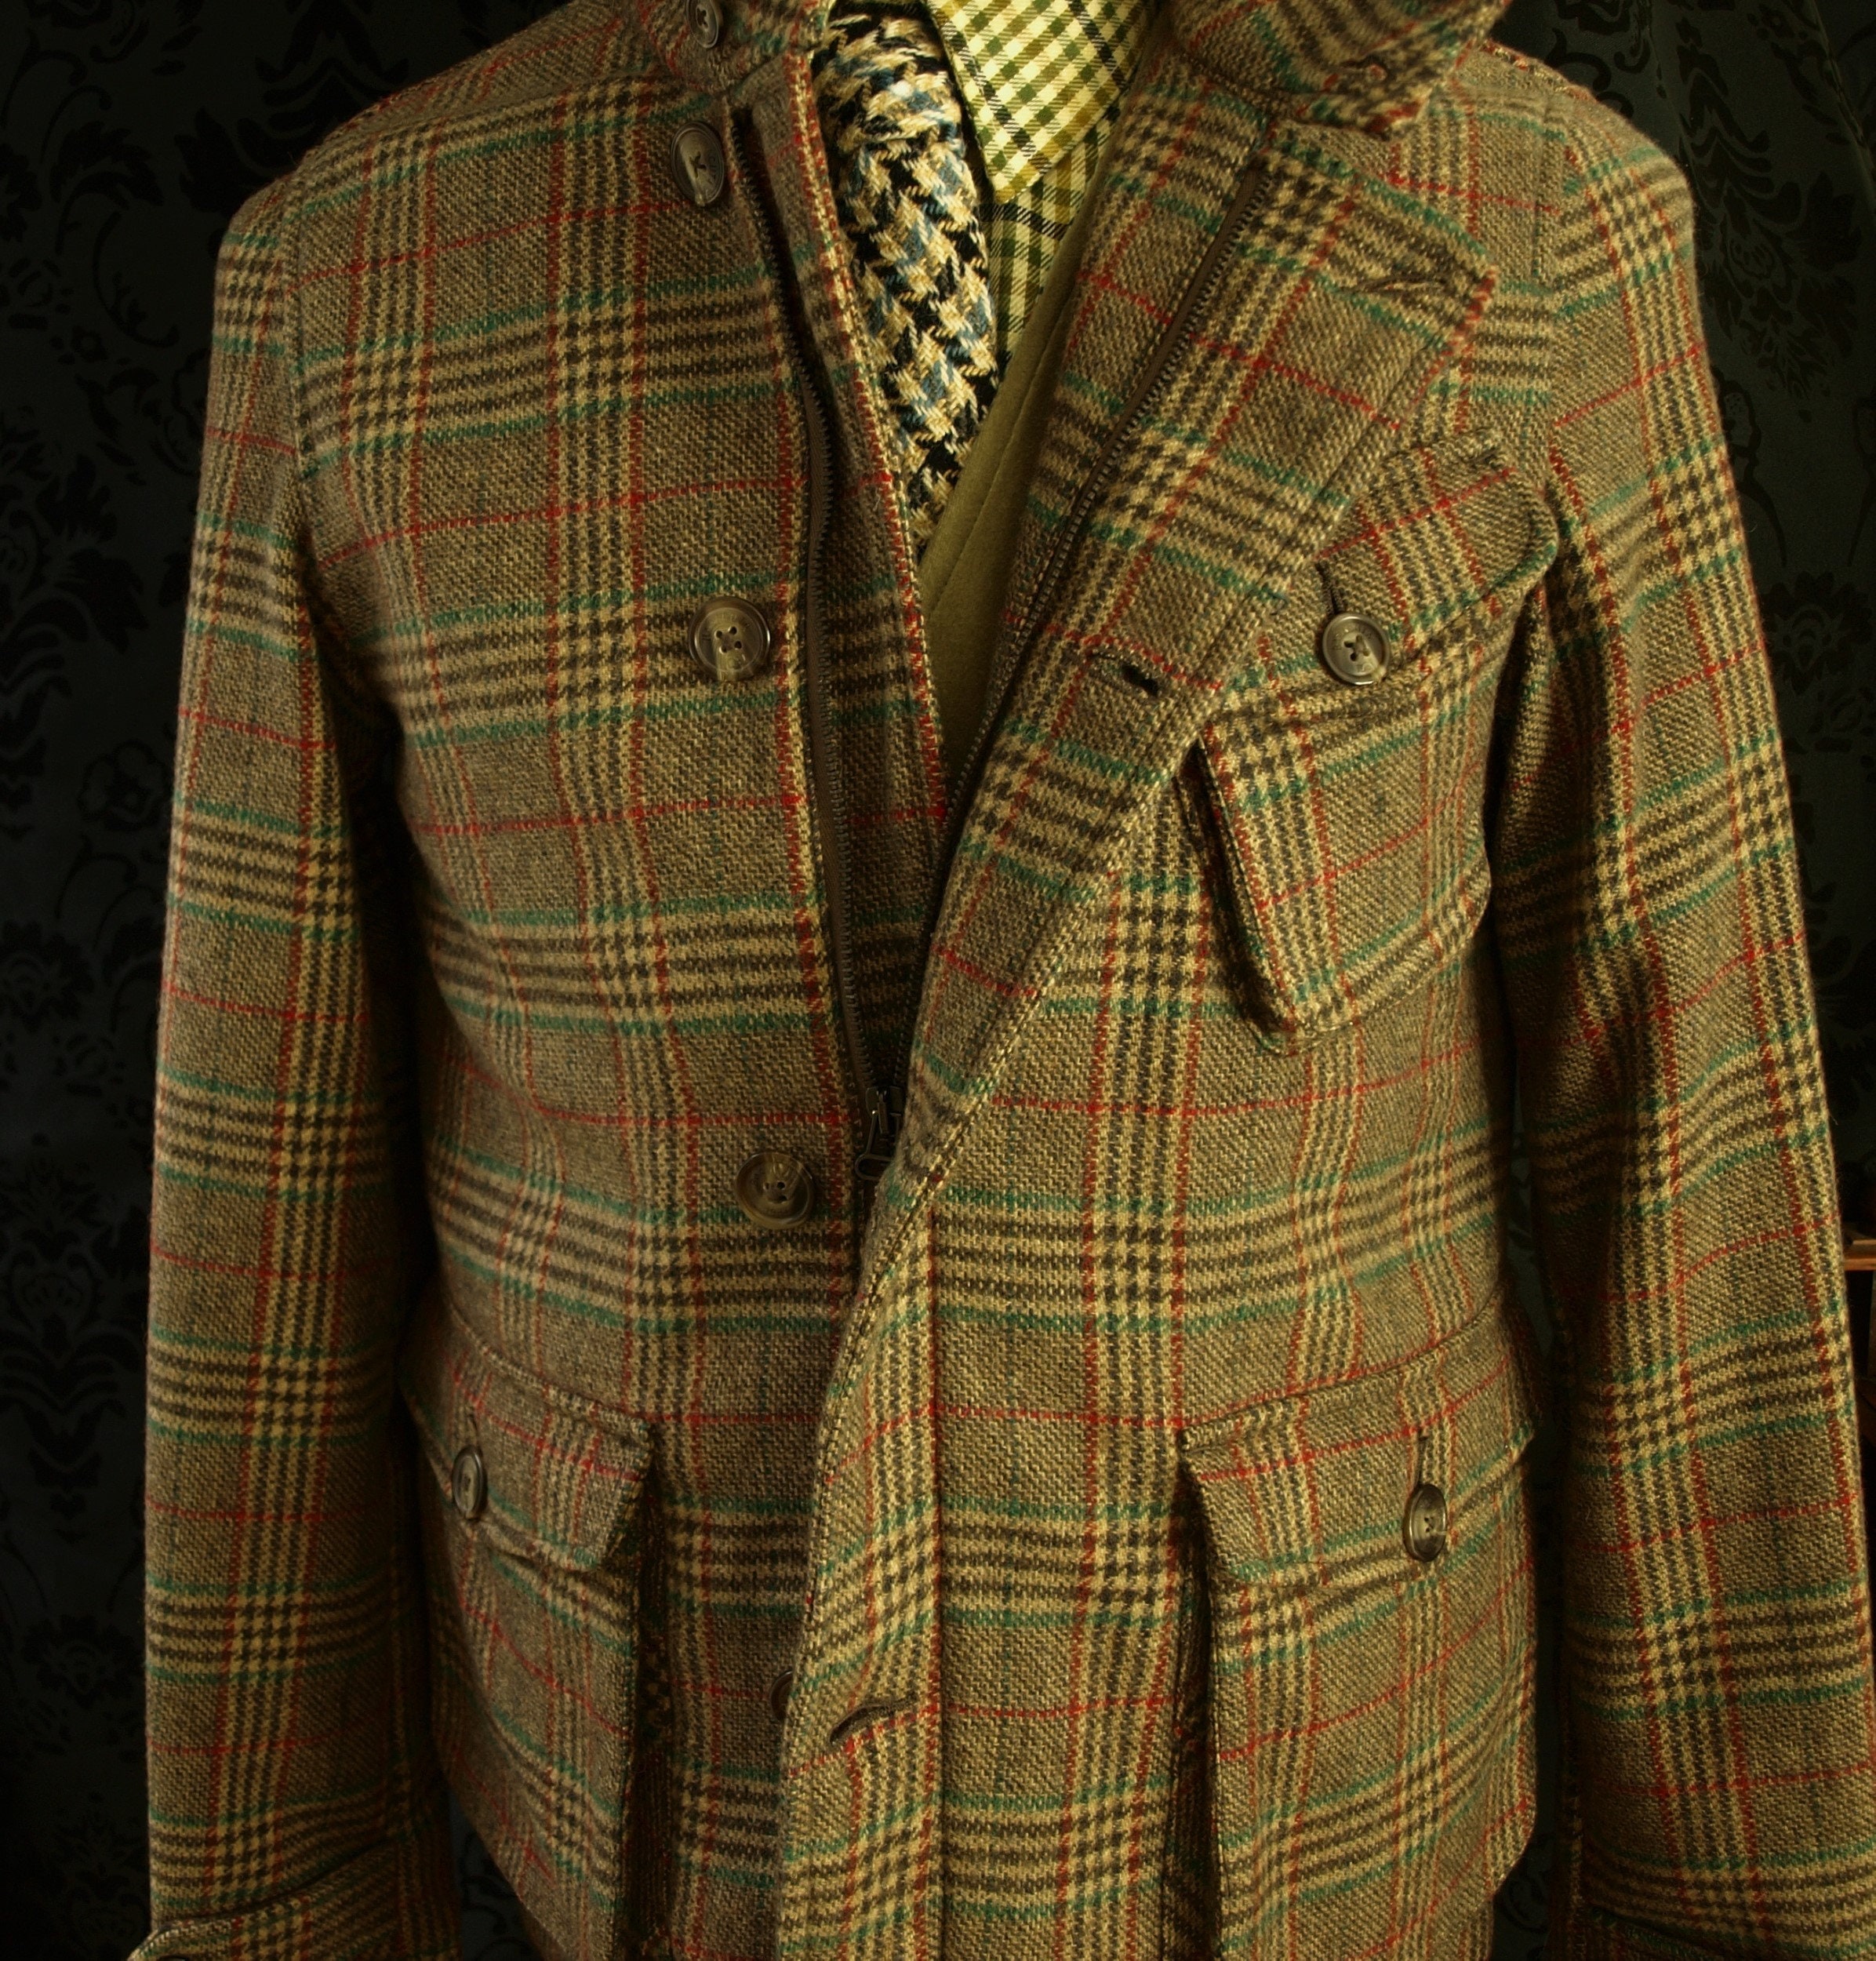 Superb Mens Baracuta Tweed Jacket Coat Size M Medium 40 RRP 399.99